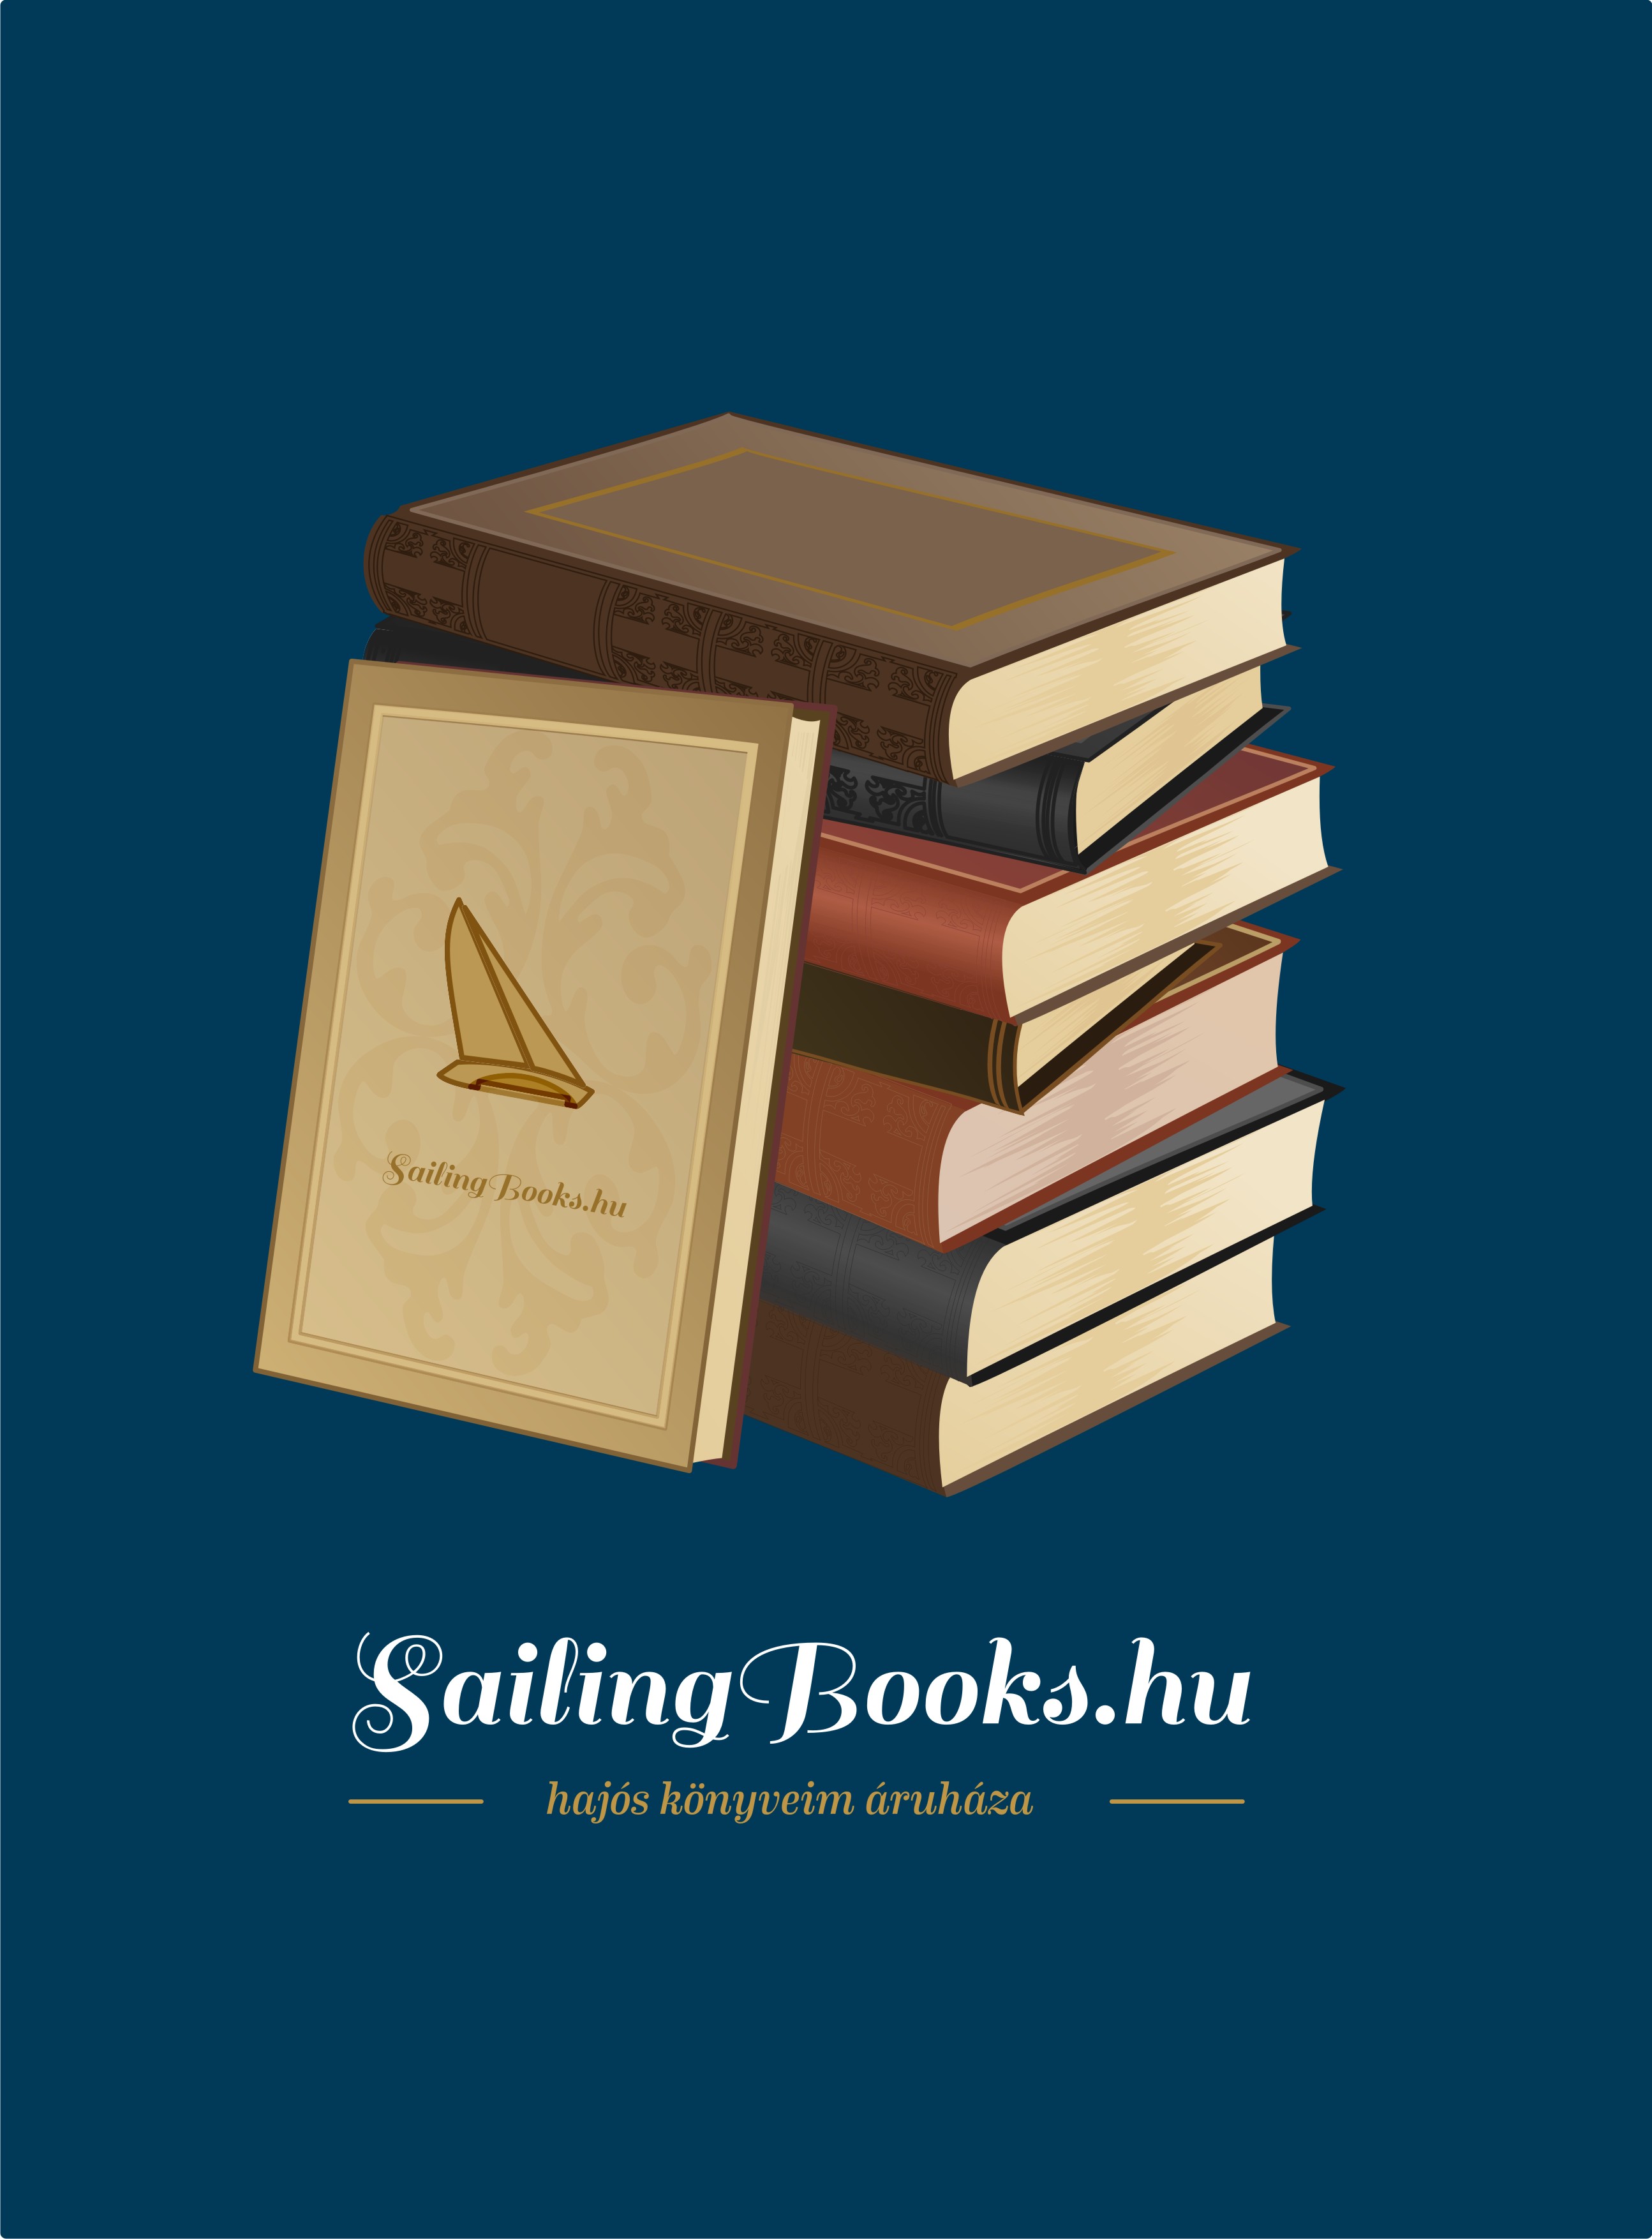 sailingbooks_logo_kek.jpg